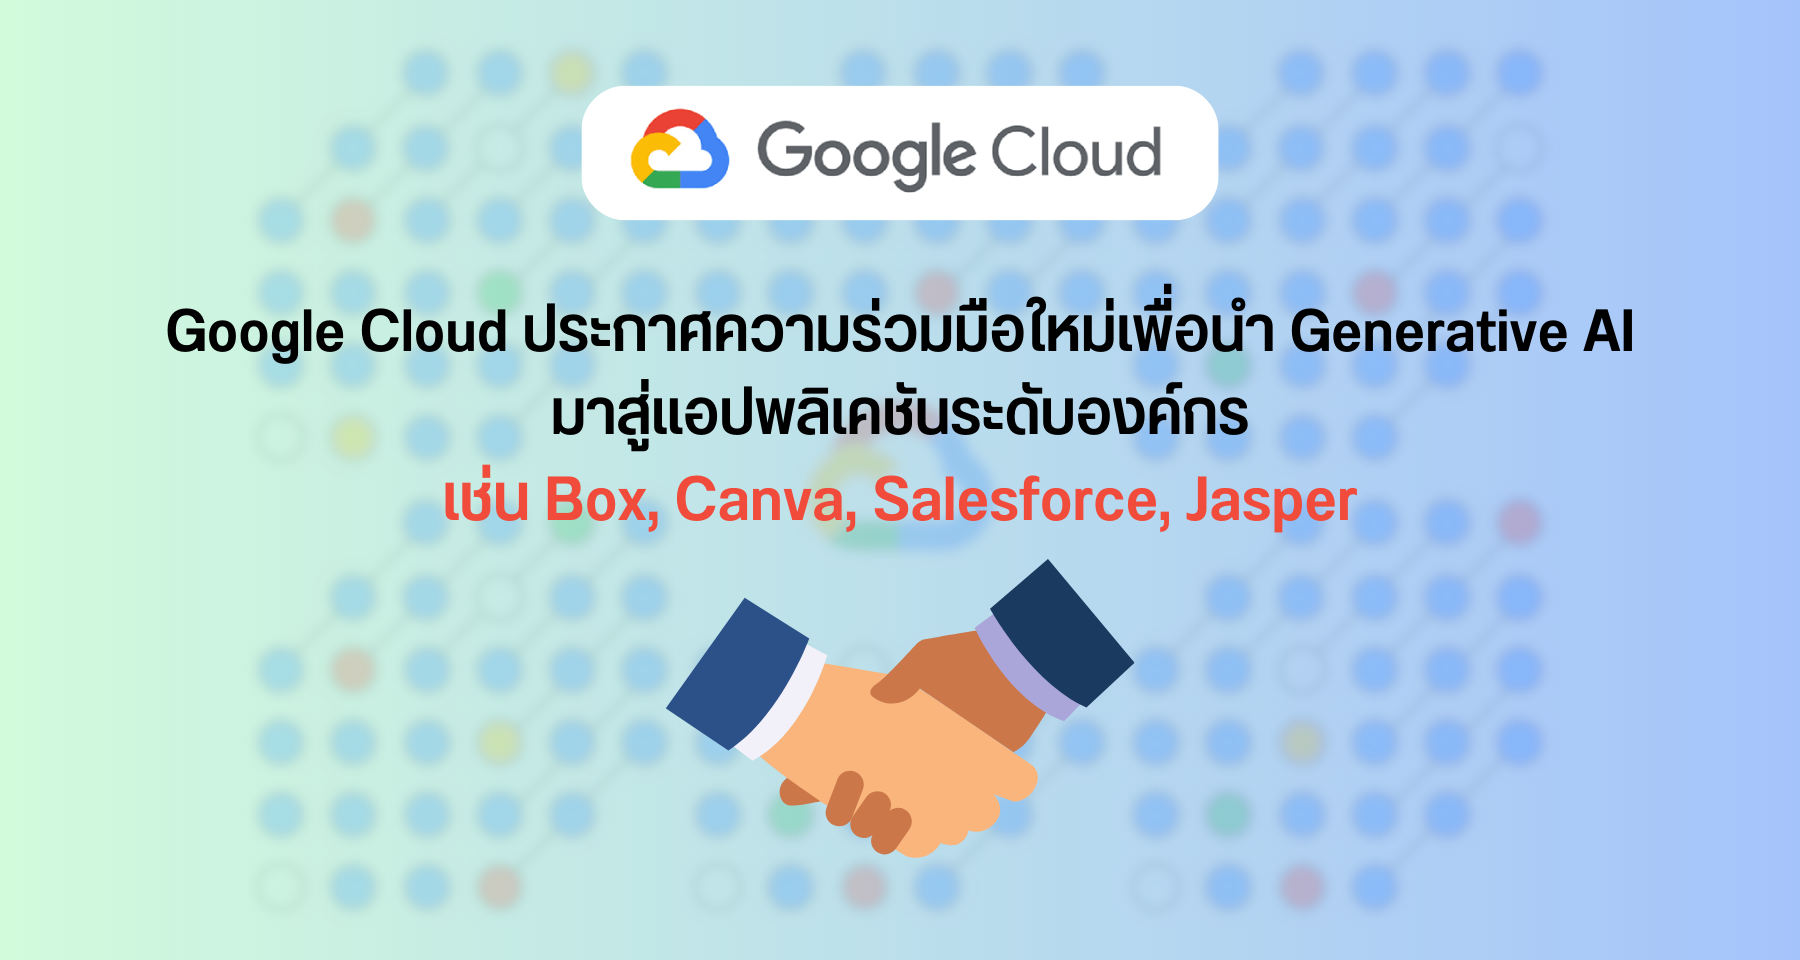 Google Cloud ประกาศความร่วมมือใหม่เพื่อนำ Generative AI มาสู่แอปพลิเคชันระดับองค์กร